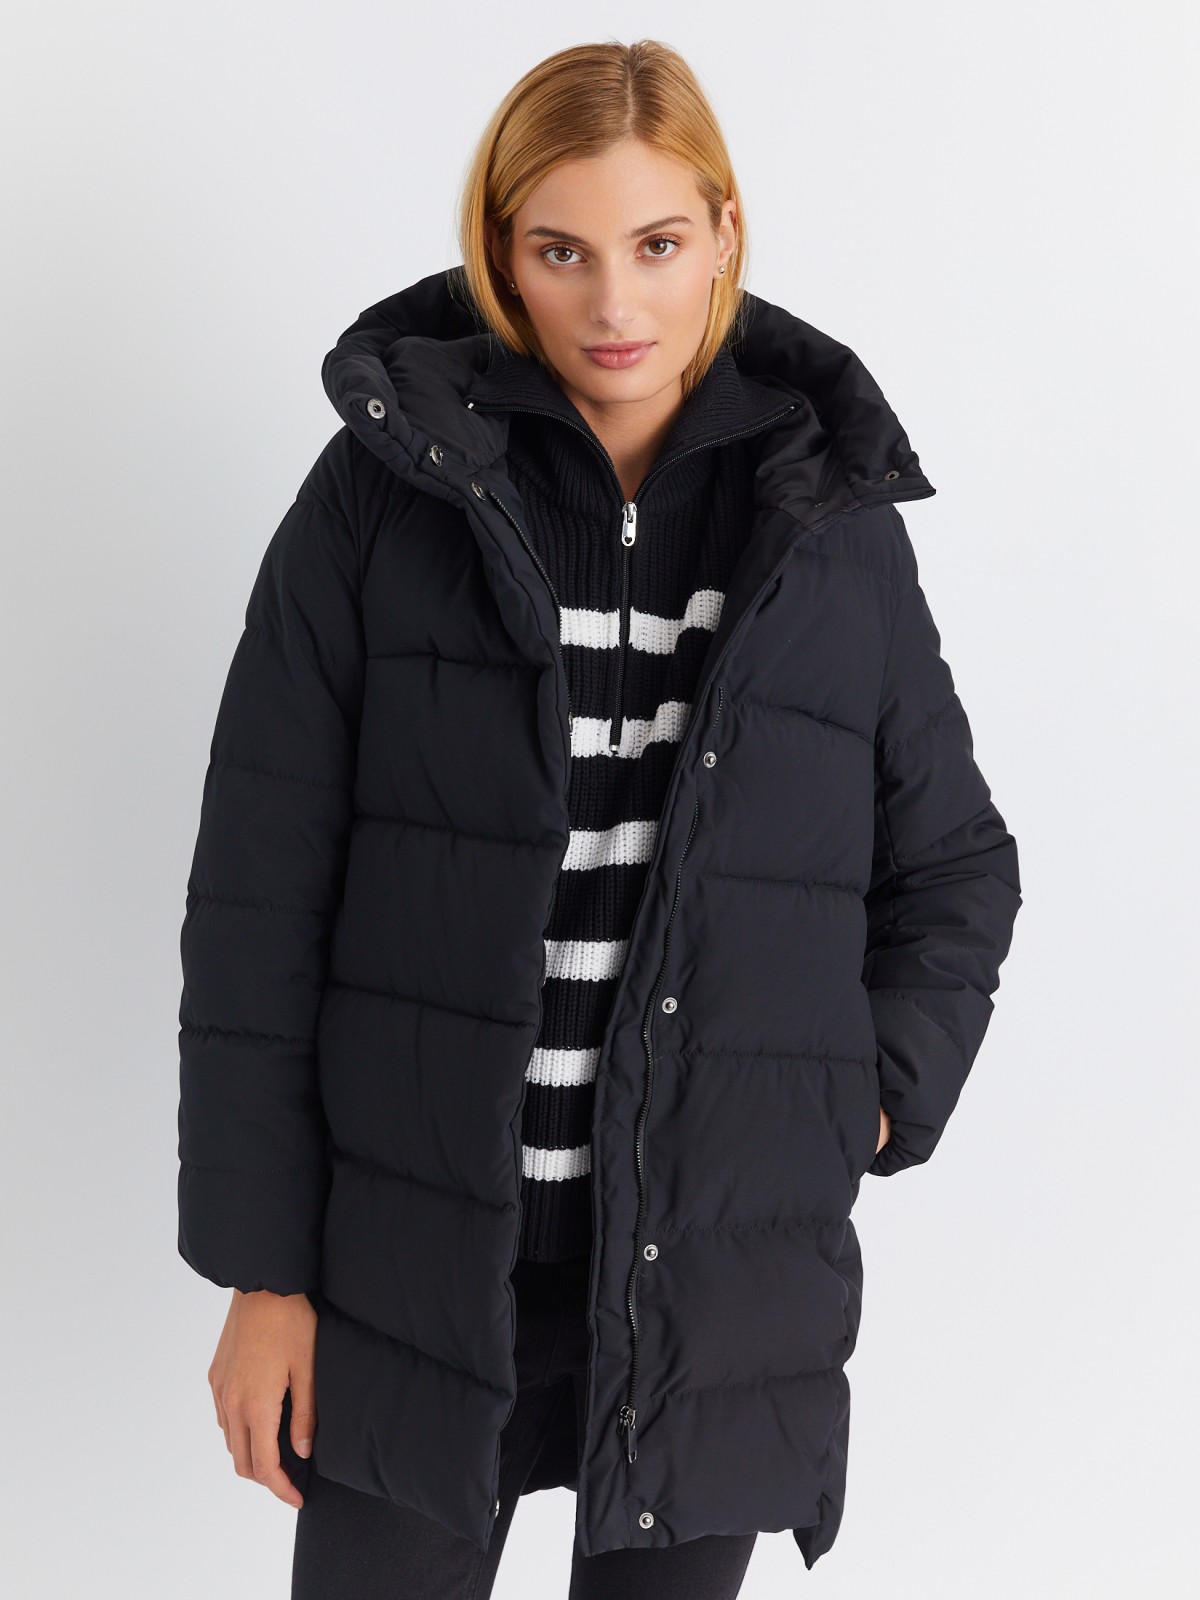 Тёплая стёганая куртка-пальто удлинённого фасона с капюшоном zolla 02334522J144, цвет черный, размер XS